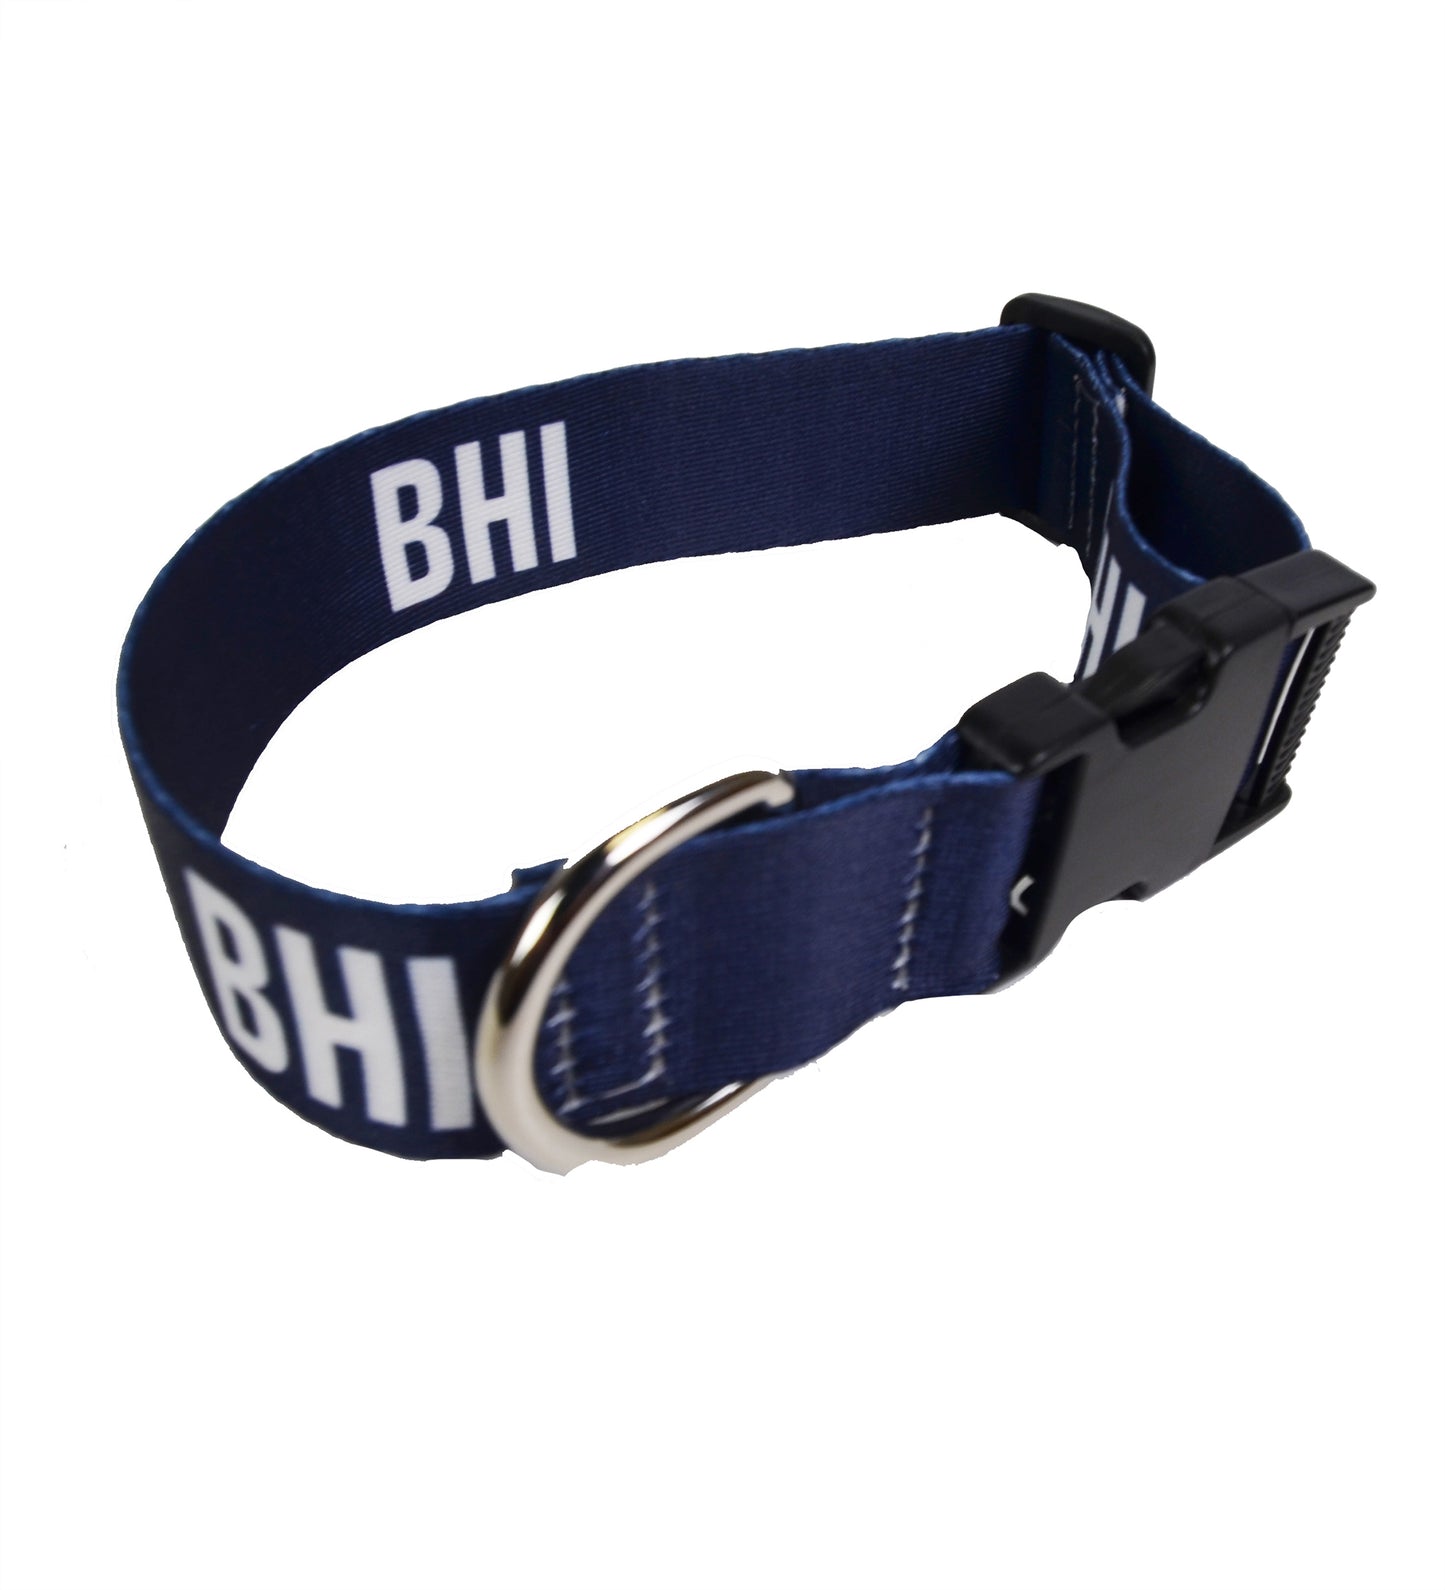 Printed Dog Collar - BHI